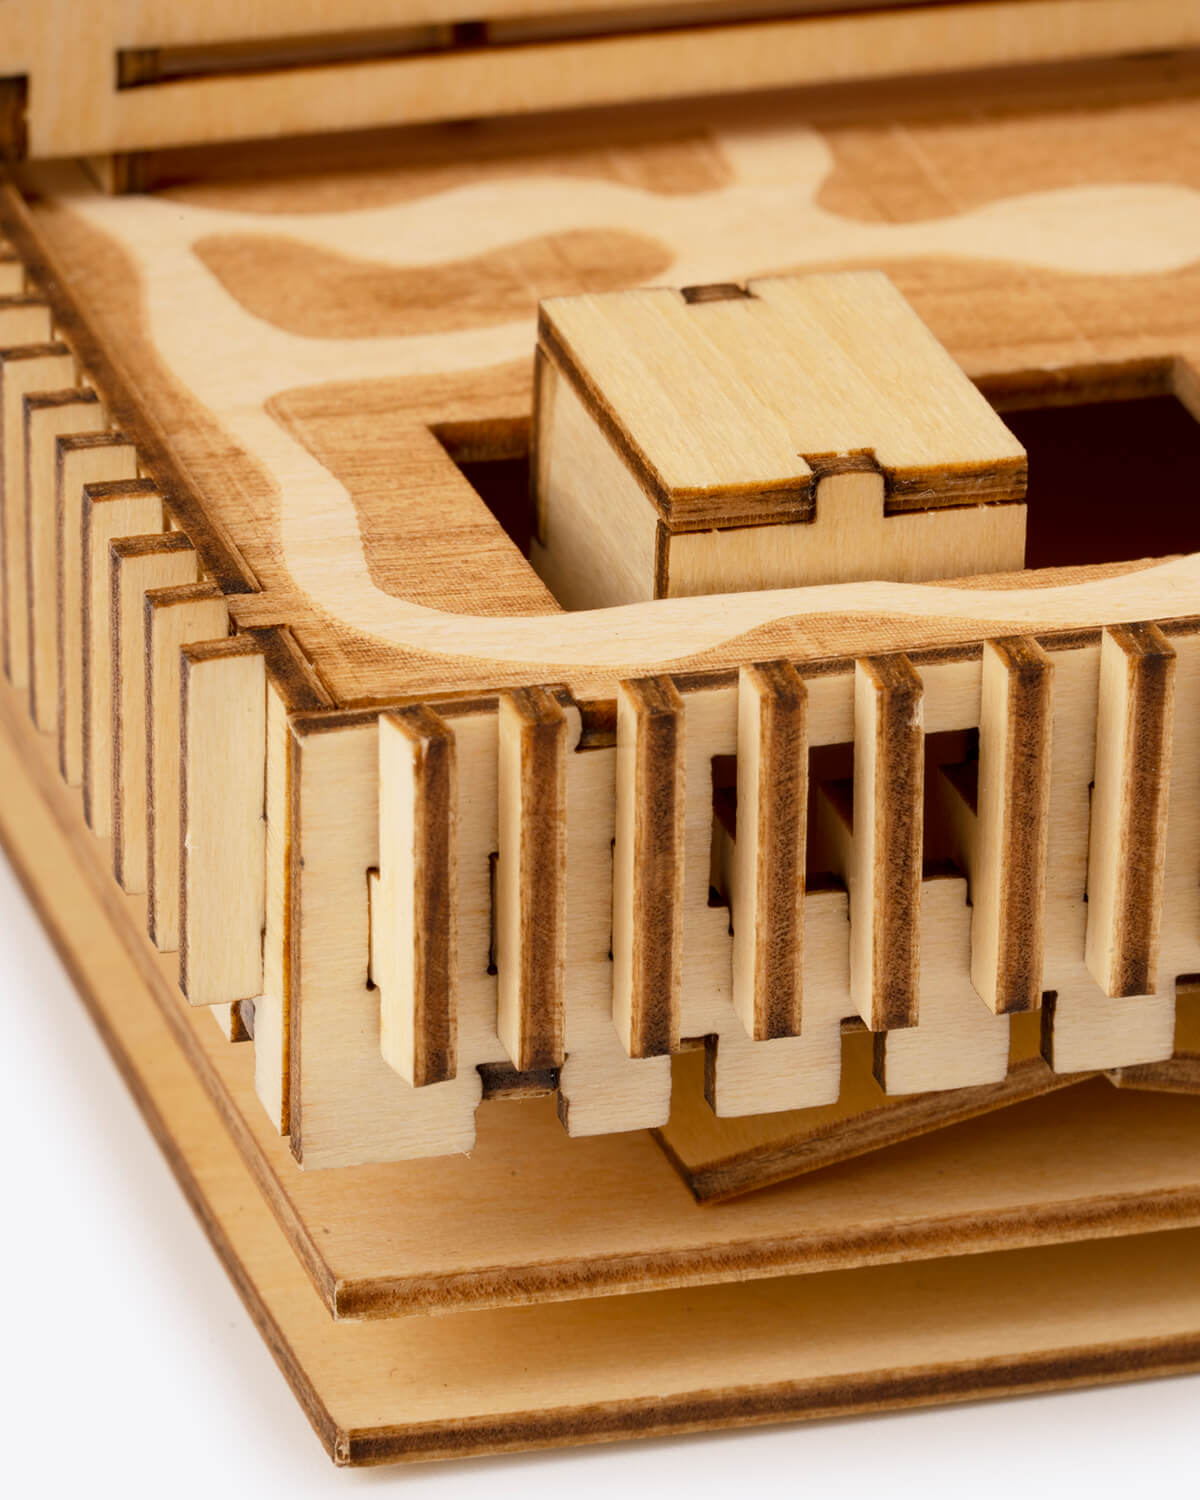 M+ Building Wooden Puzzle 